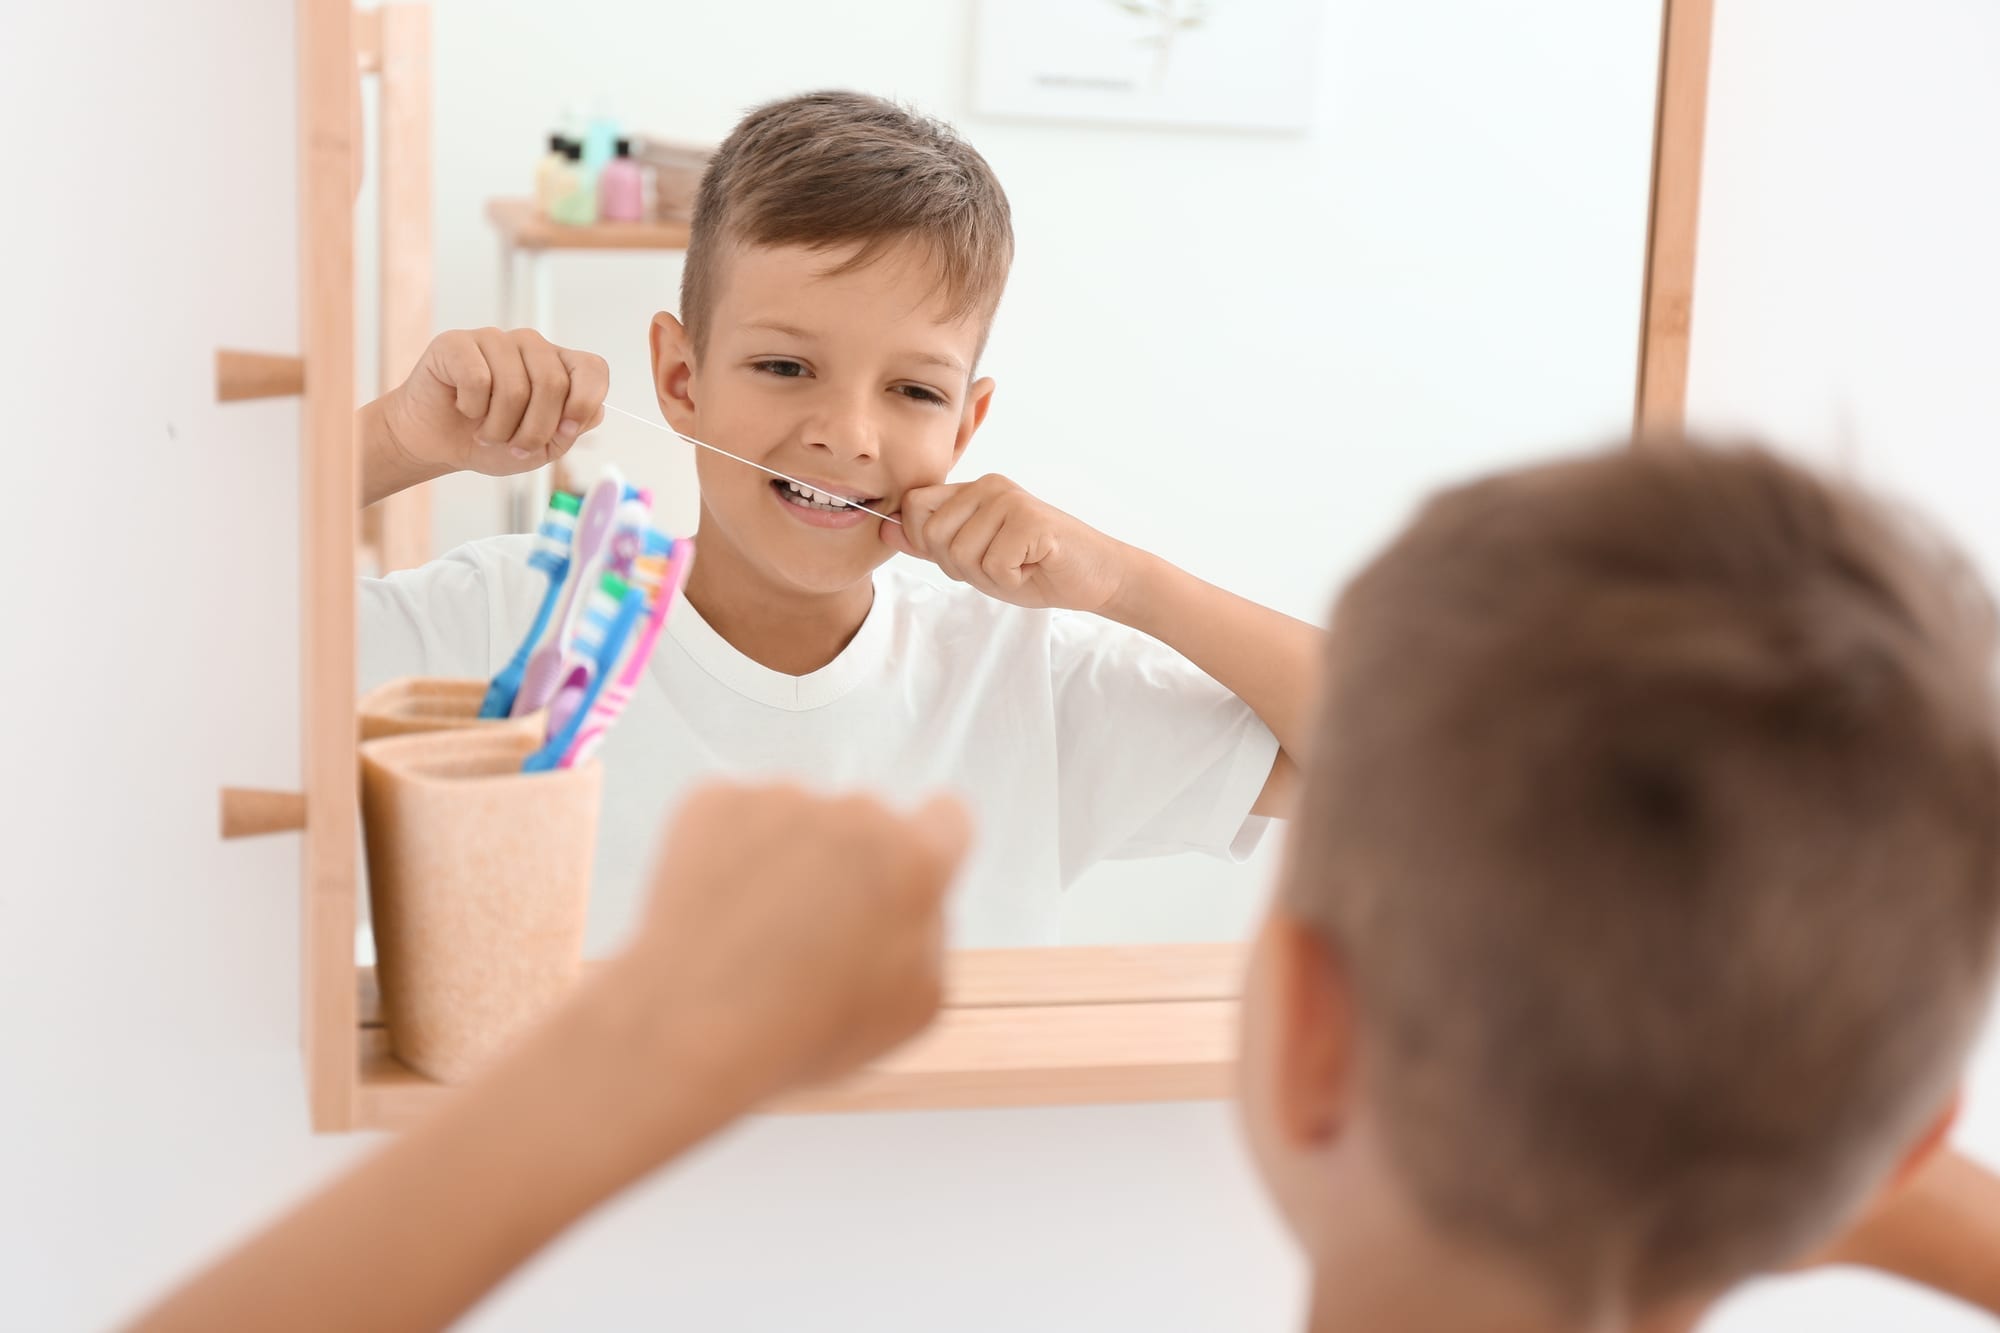 Little boy flossing teeth in bathroom mirror